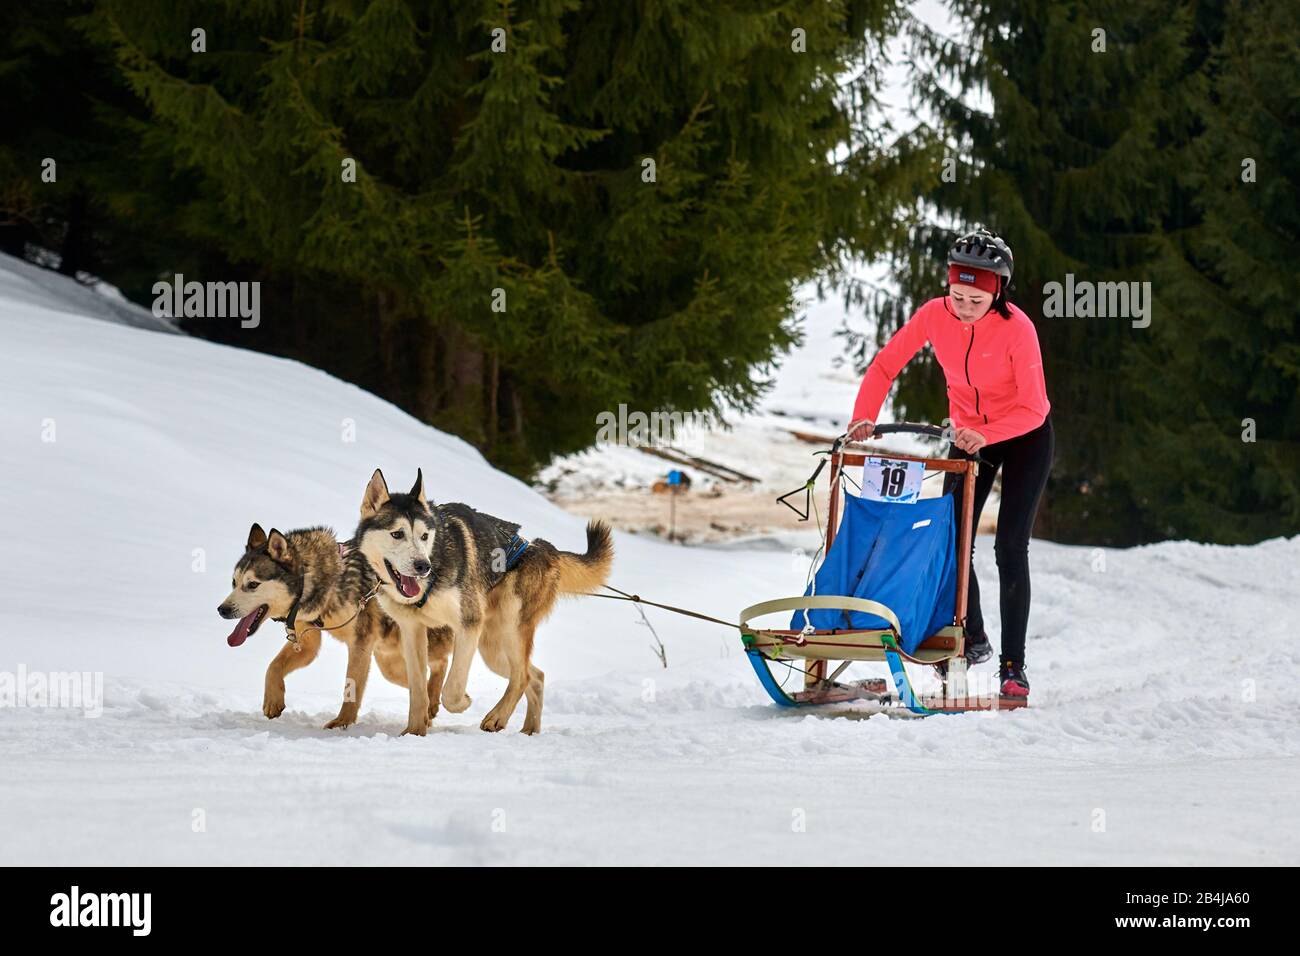 Tusnad, ROUMANIE - 02 février 2019: Une femme non identifiée participant au concours gratuit de course de traîneau à chiens avec des chiens.la masher de Sportswoman fait du traîneau à chiens Banque D'Images